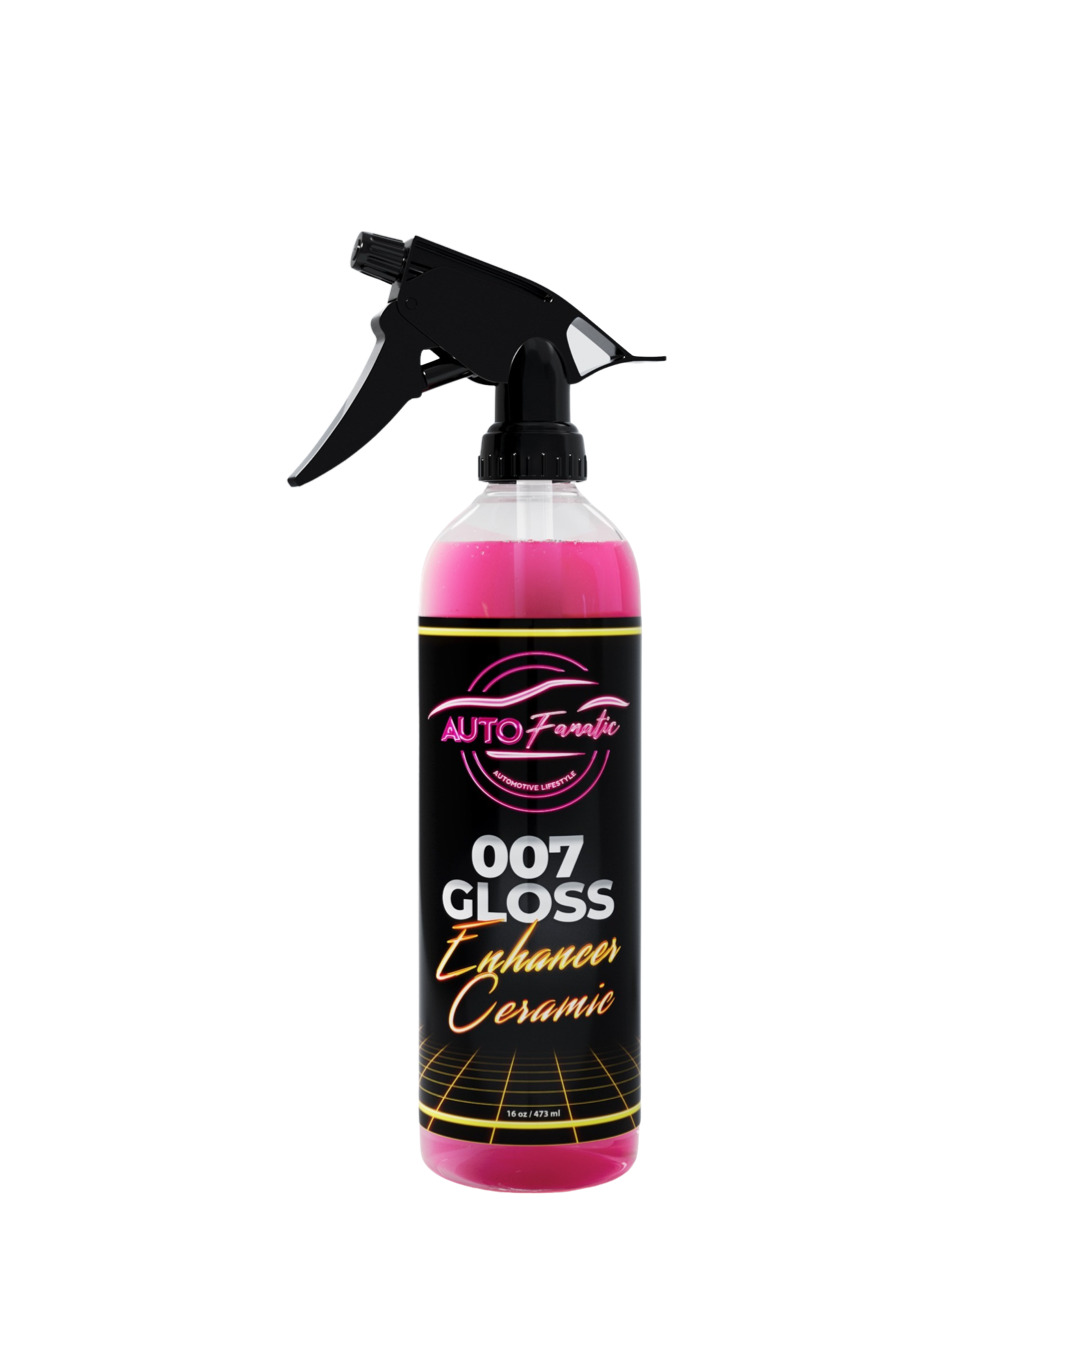 Auto Fanatic 007 Gloss Enhancer Sio2 Ceramic Detailer & Spray Sealant 16oz  With Professional Sprayer